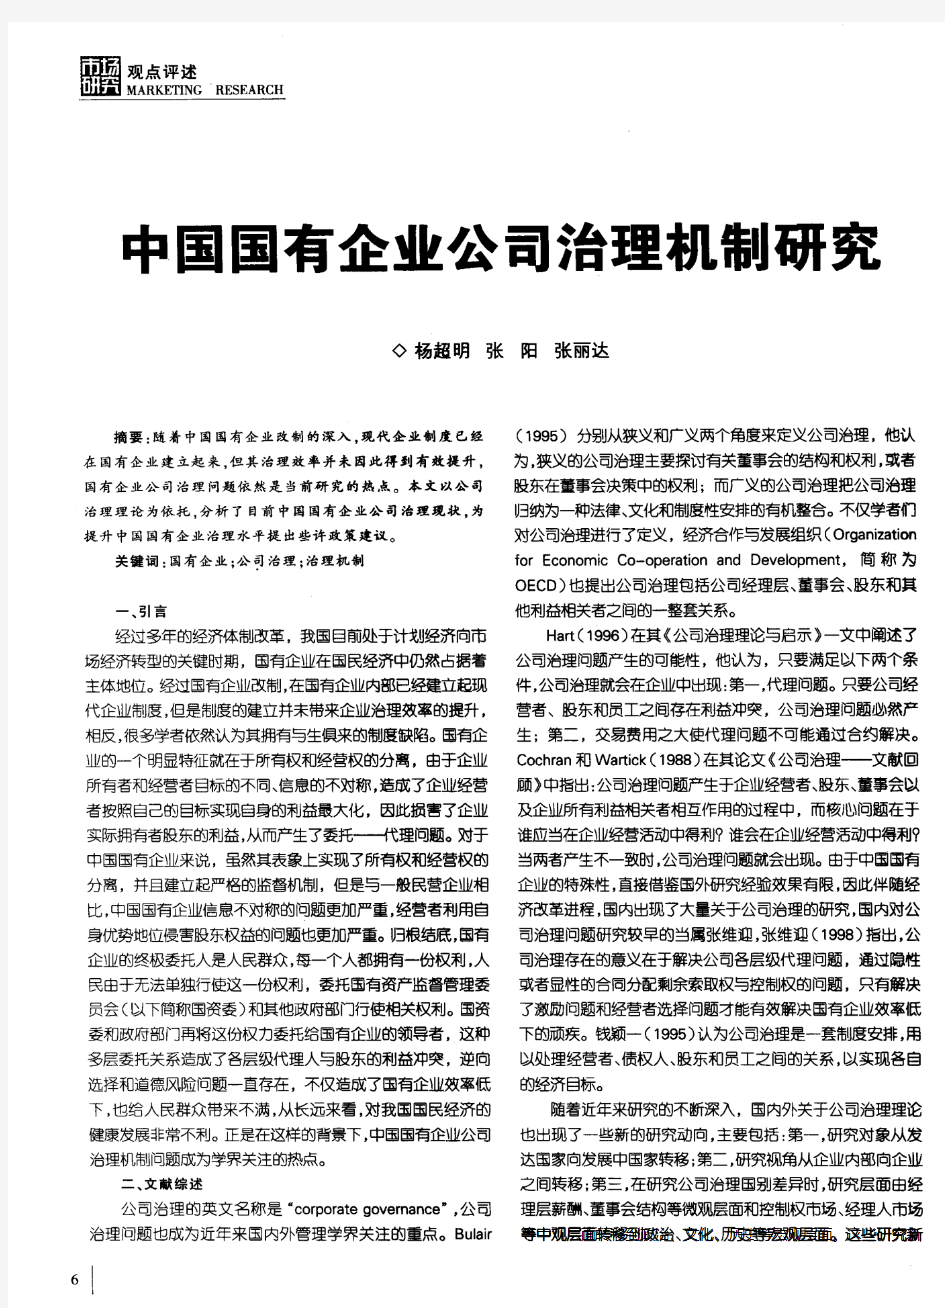 中国国有企业公司治理机制研究